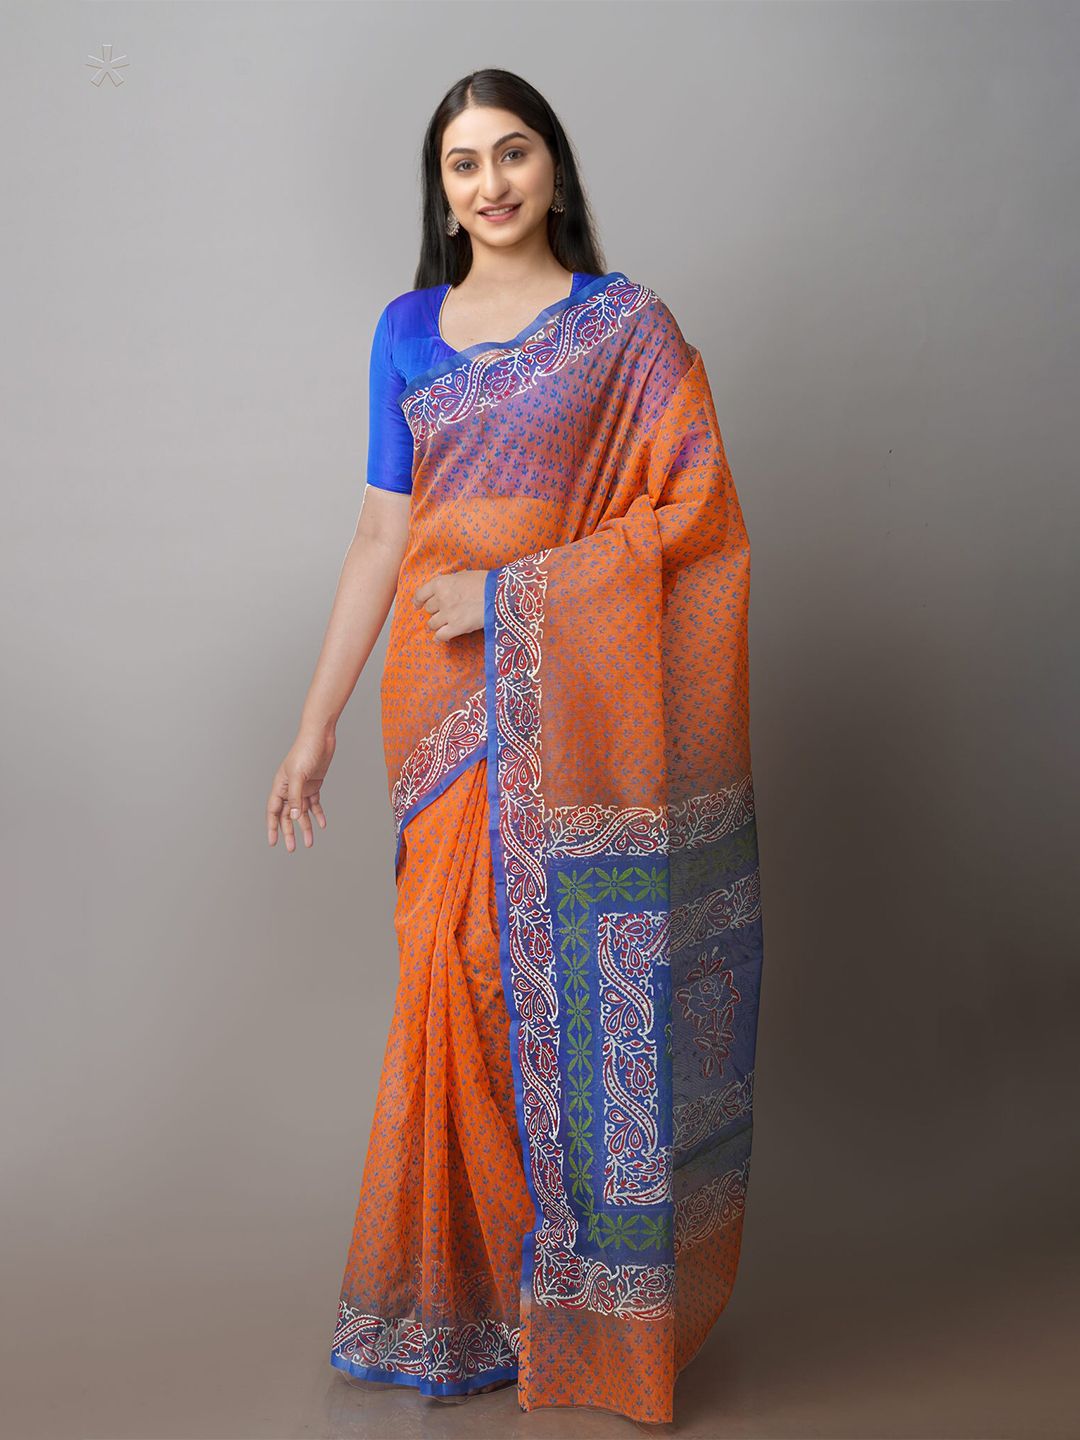 Unnati Silks Orange & Blue Ethnic Motifs Net Block Print Saree Price in India